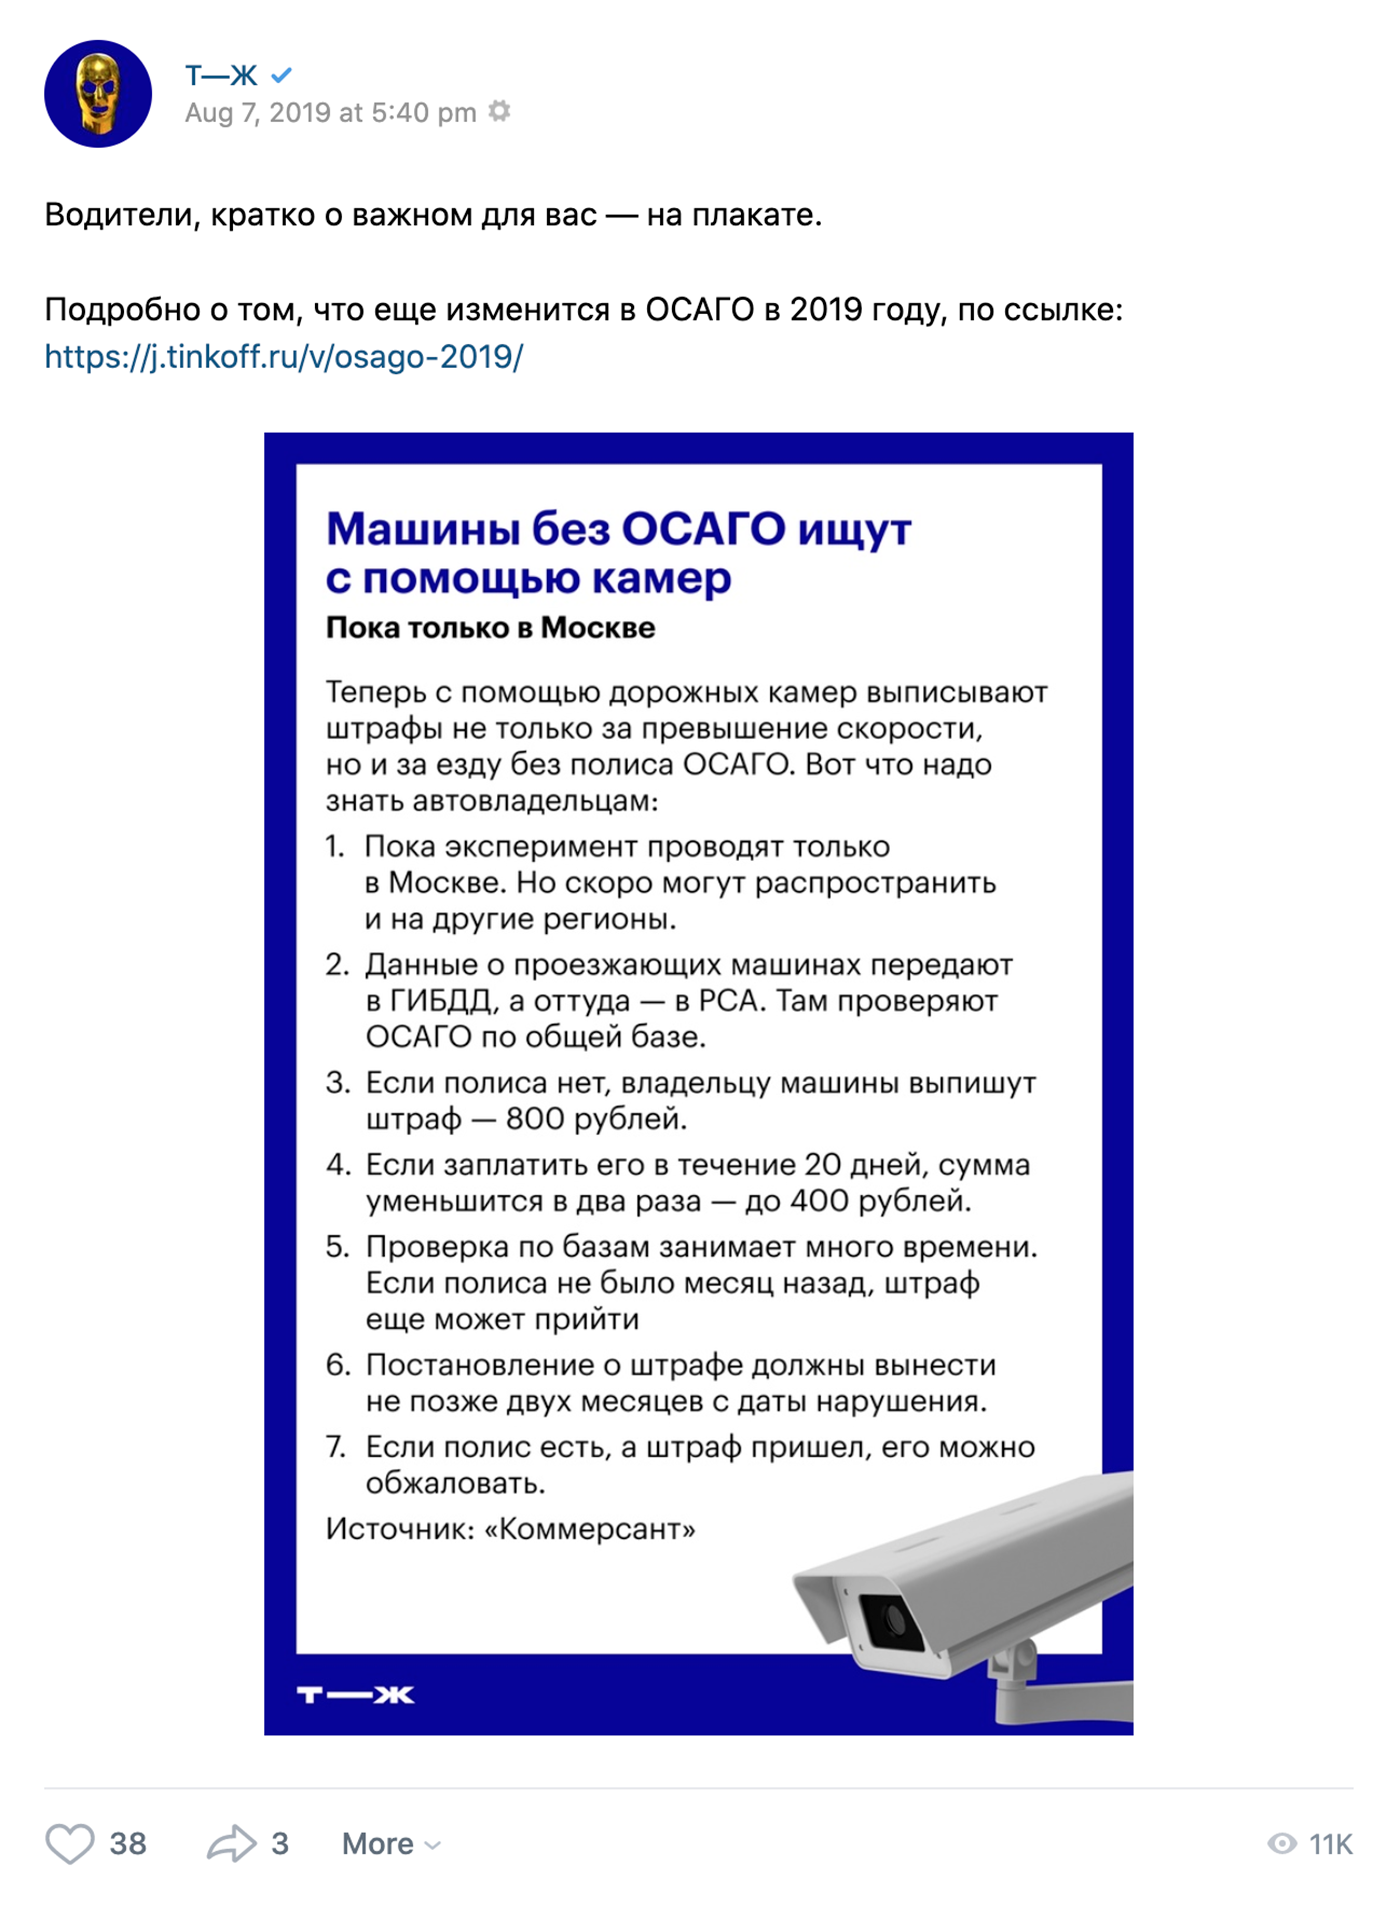 Ресайз с выжимками из статьи в виде плаката во Вконтакте